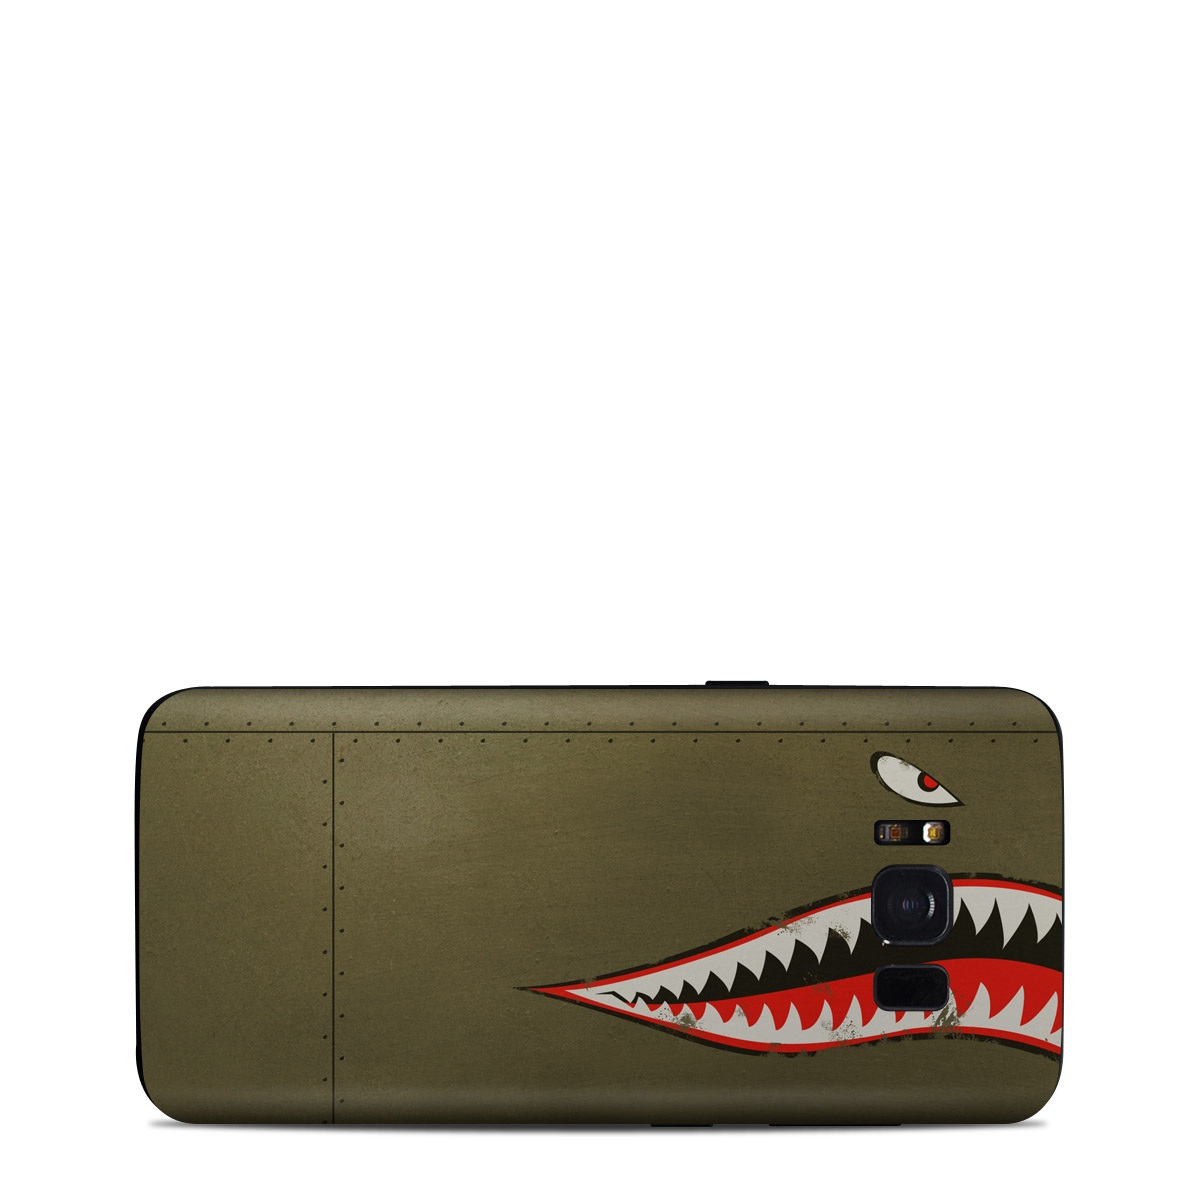 Samsung Galaxy S8 Skin - USAF Shark (Image 1)